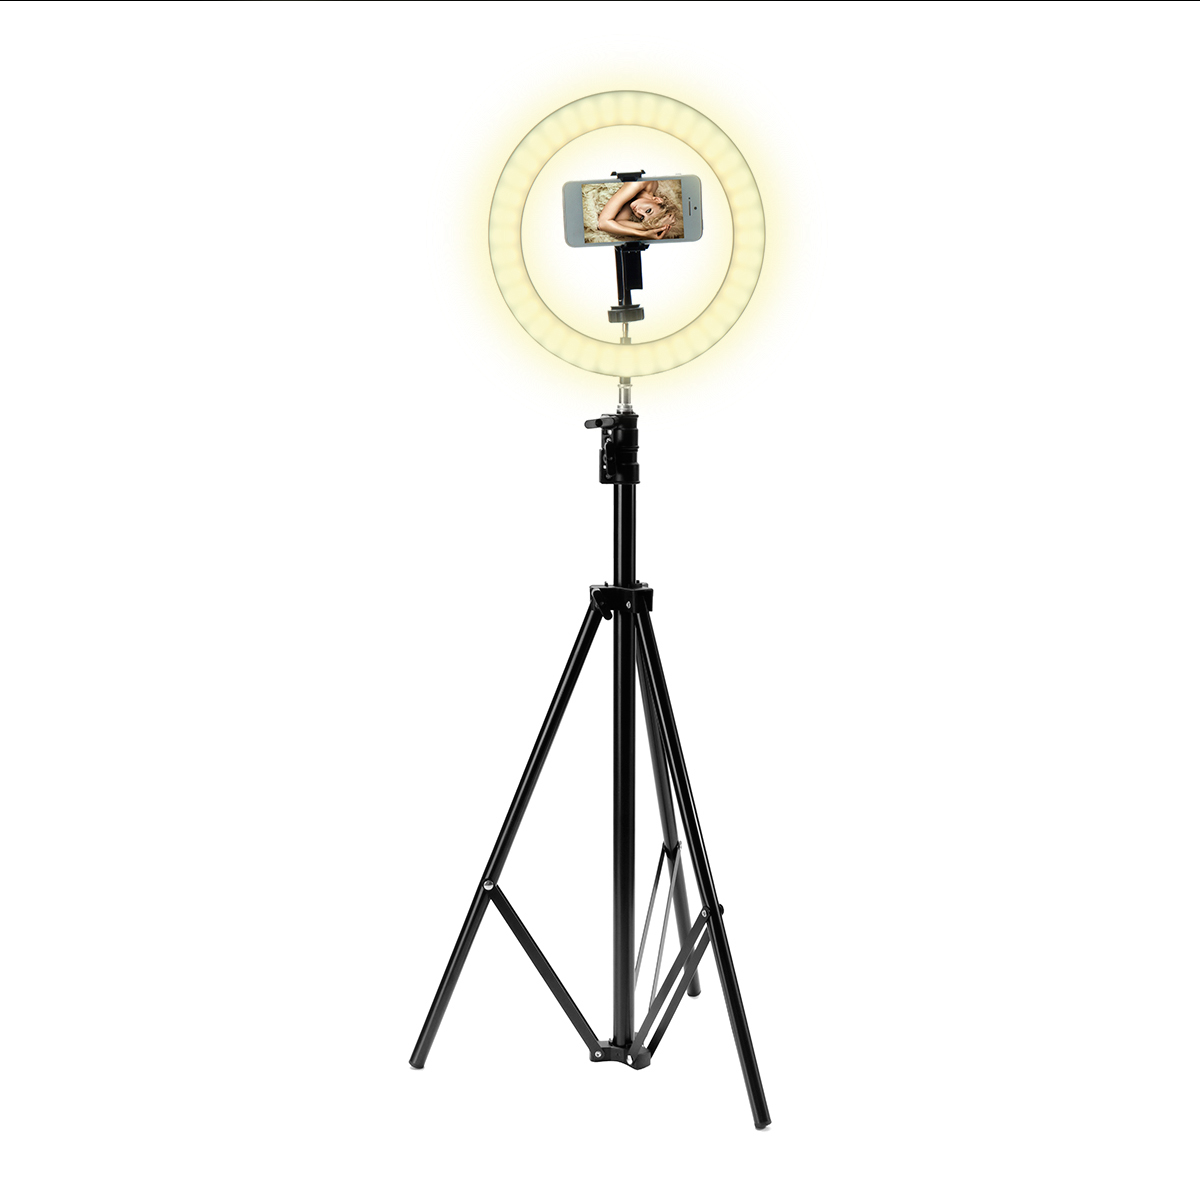 Portable-LED-Ring-Light-Tripod-Stand-Live-Selfie-Holder-USB-Plug-10-Inch-Fill-Light-for-YouTube-Tikt-1431335-6